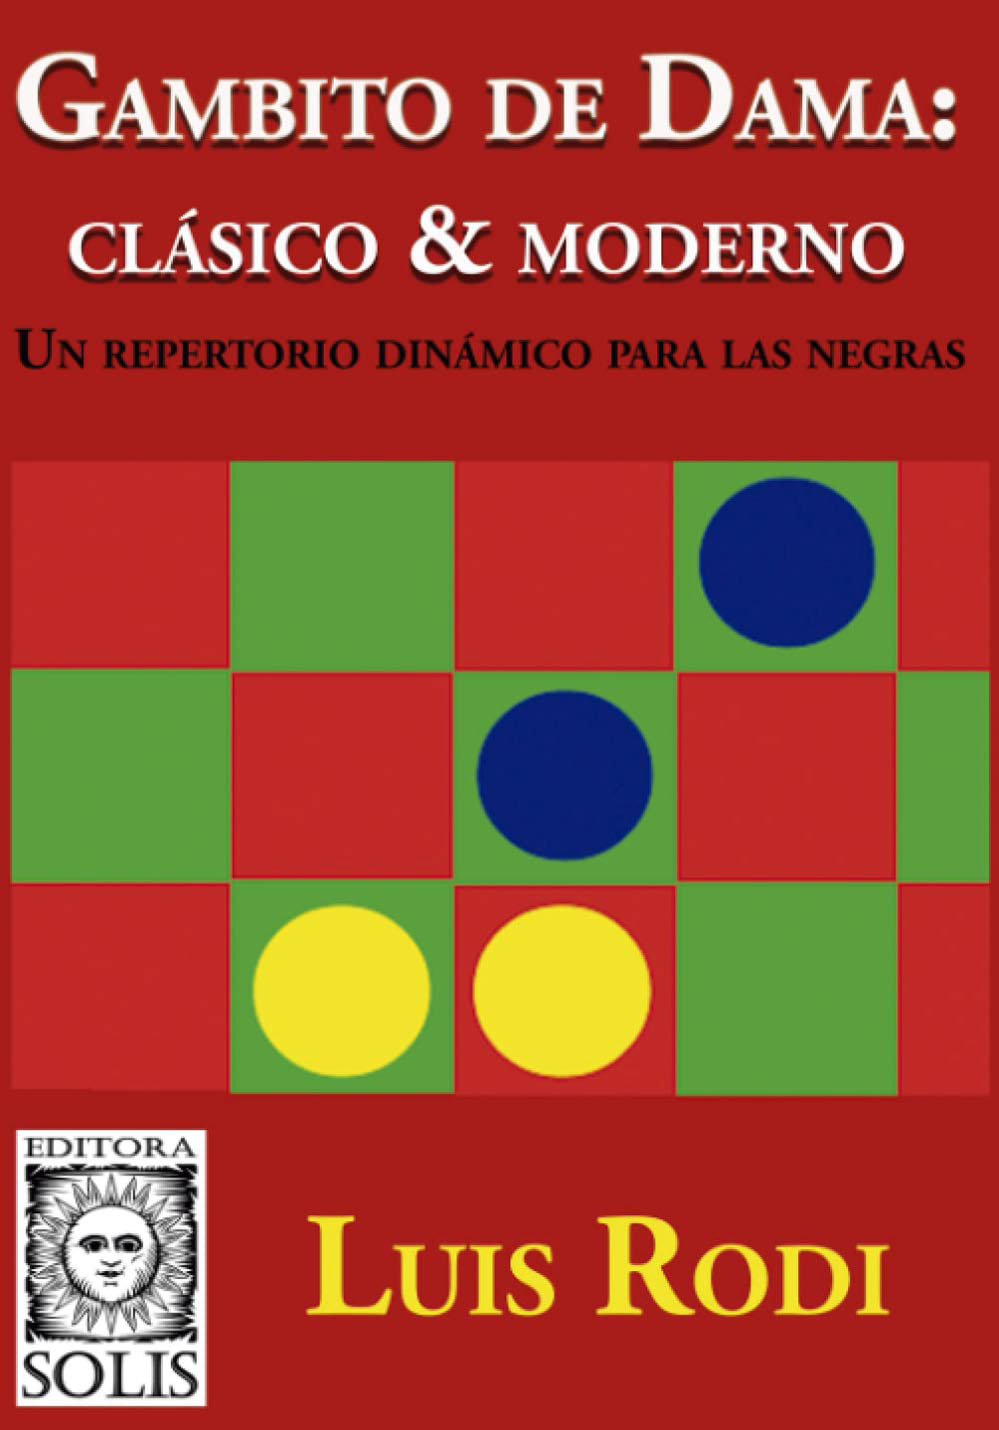 Gambito de dama: Clásico & moderno